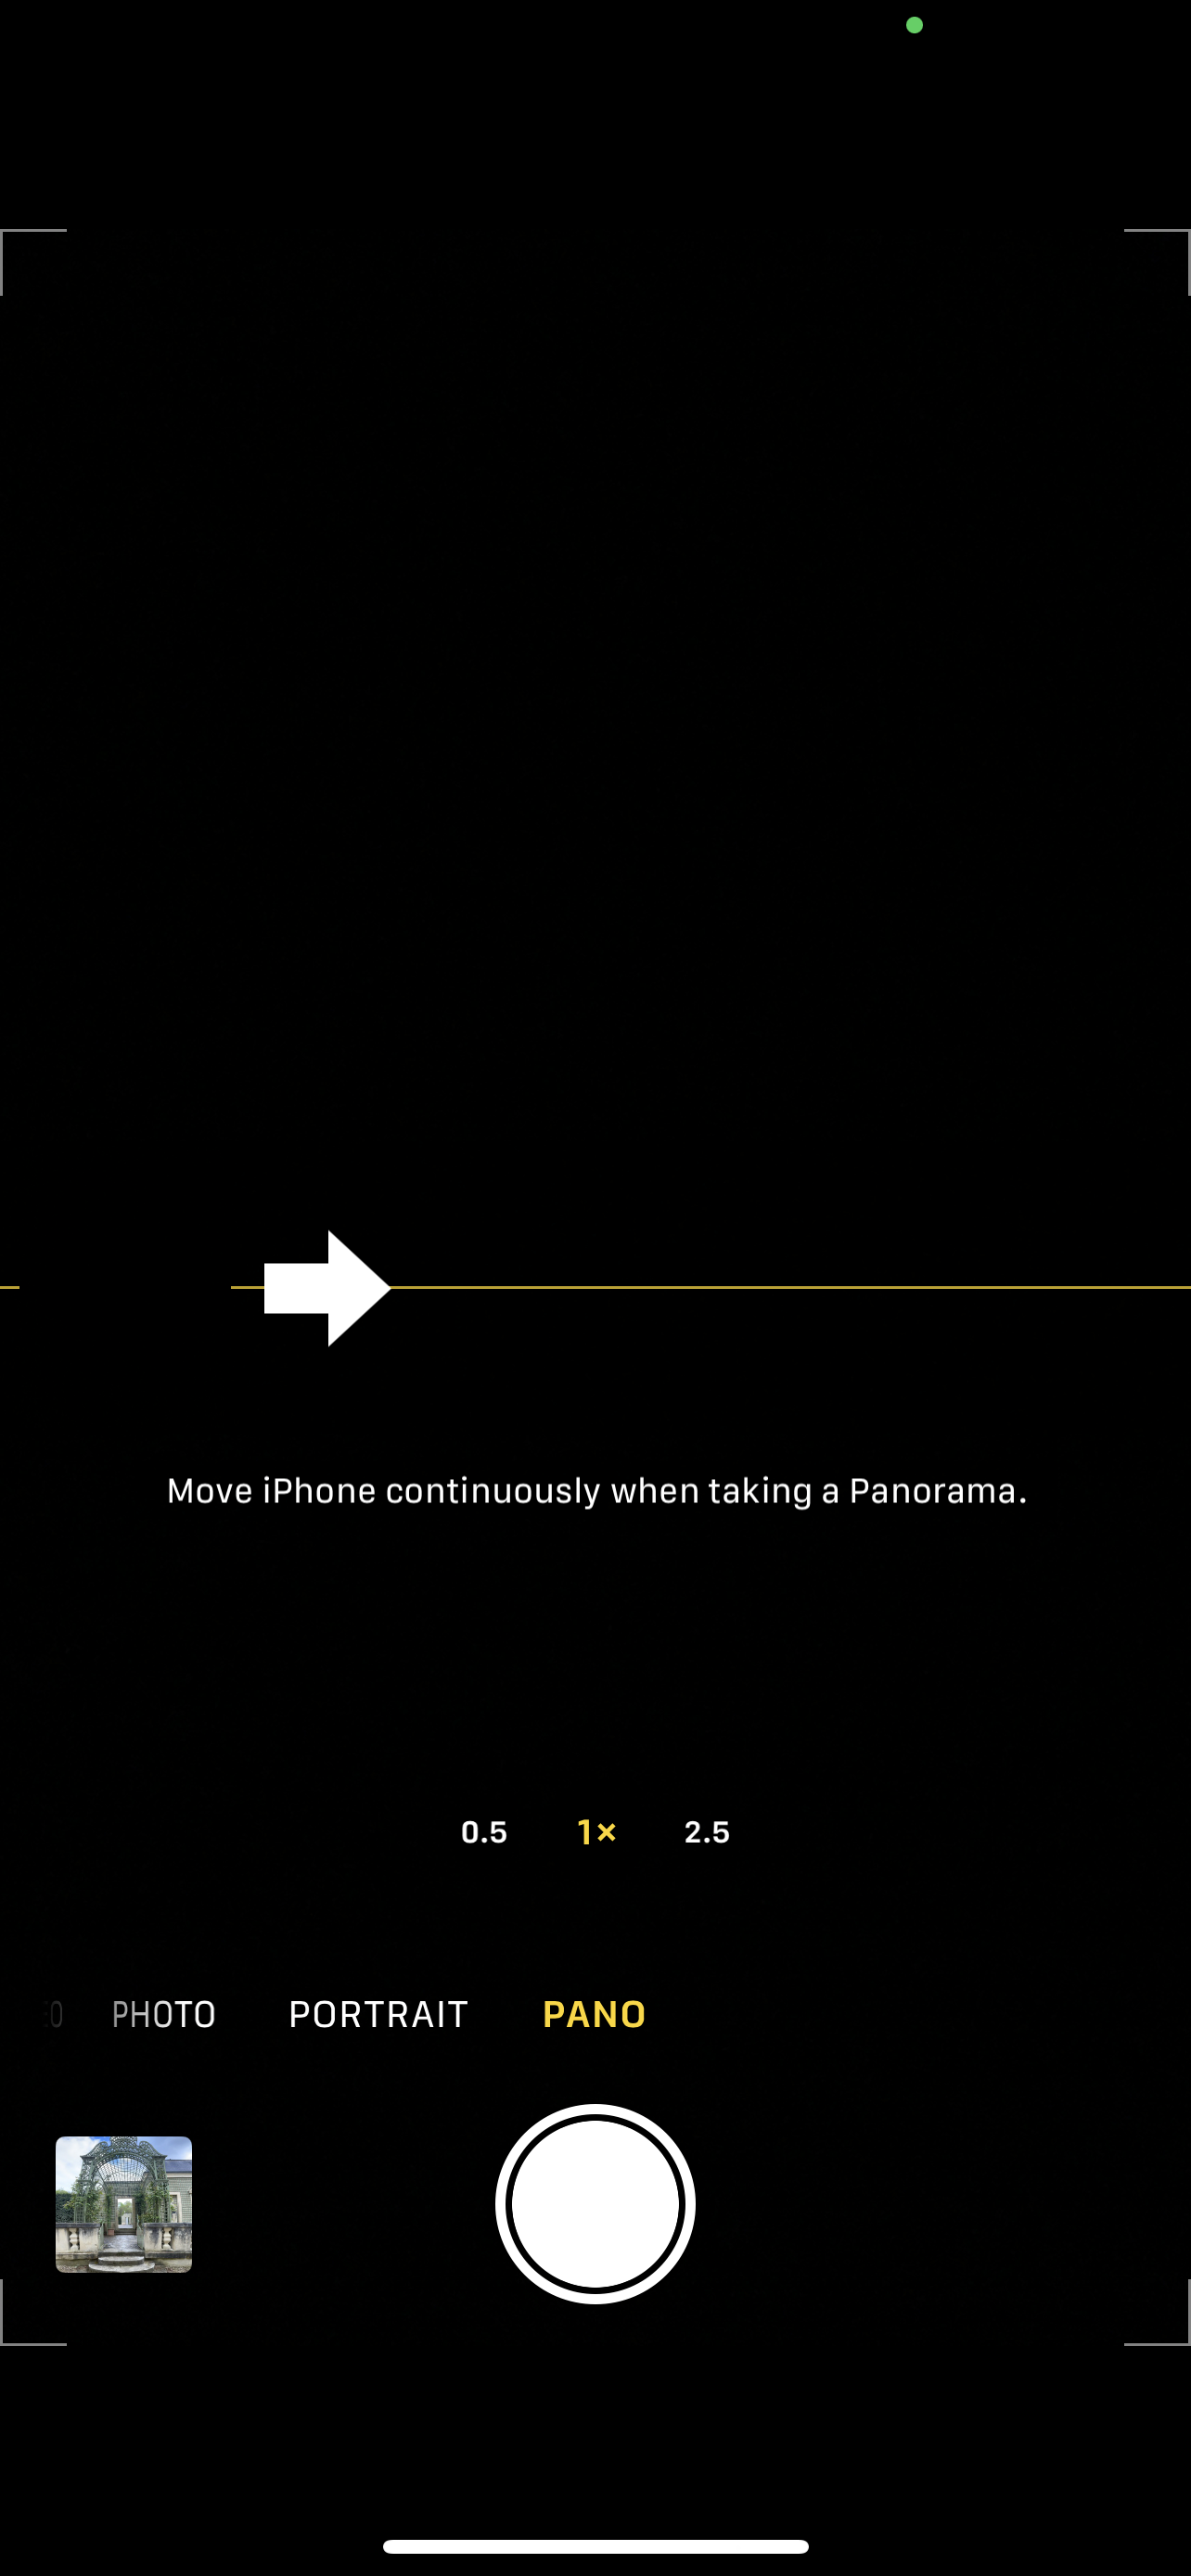 Captura de pantalla de la aplicación de cámara Apple iPhone 12 Pro Max en modo panorámico